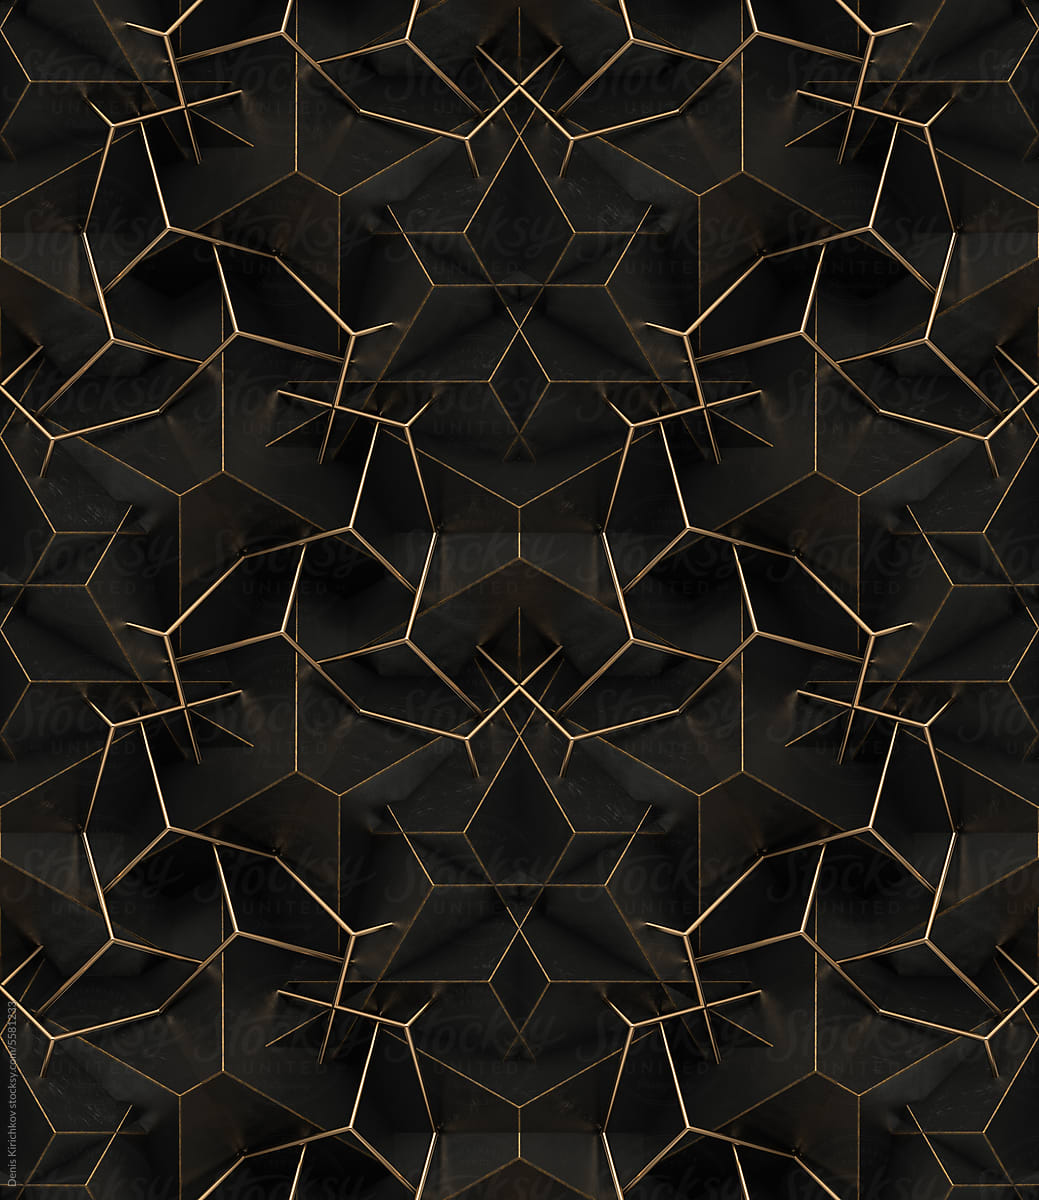 Futuristic black wall pattern.